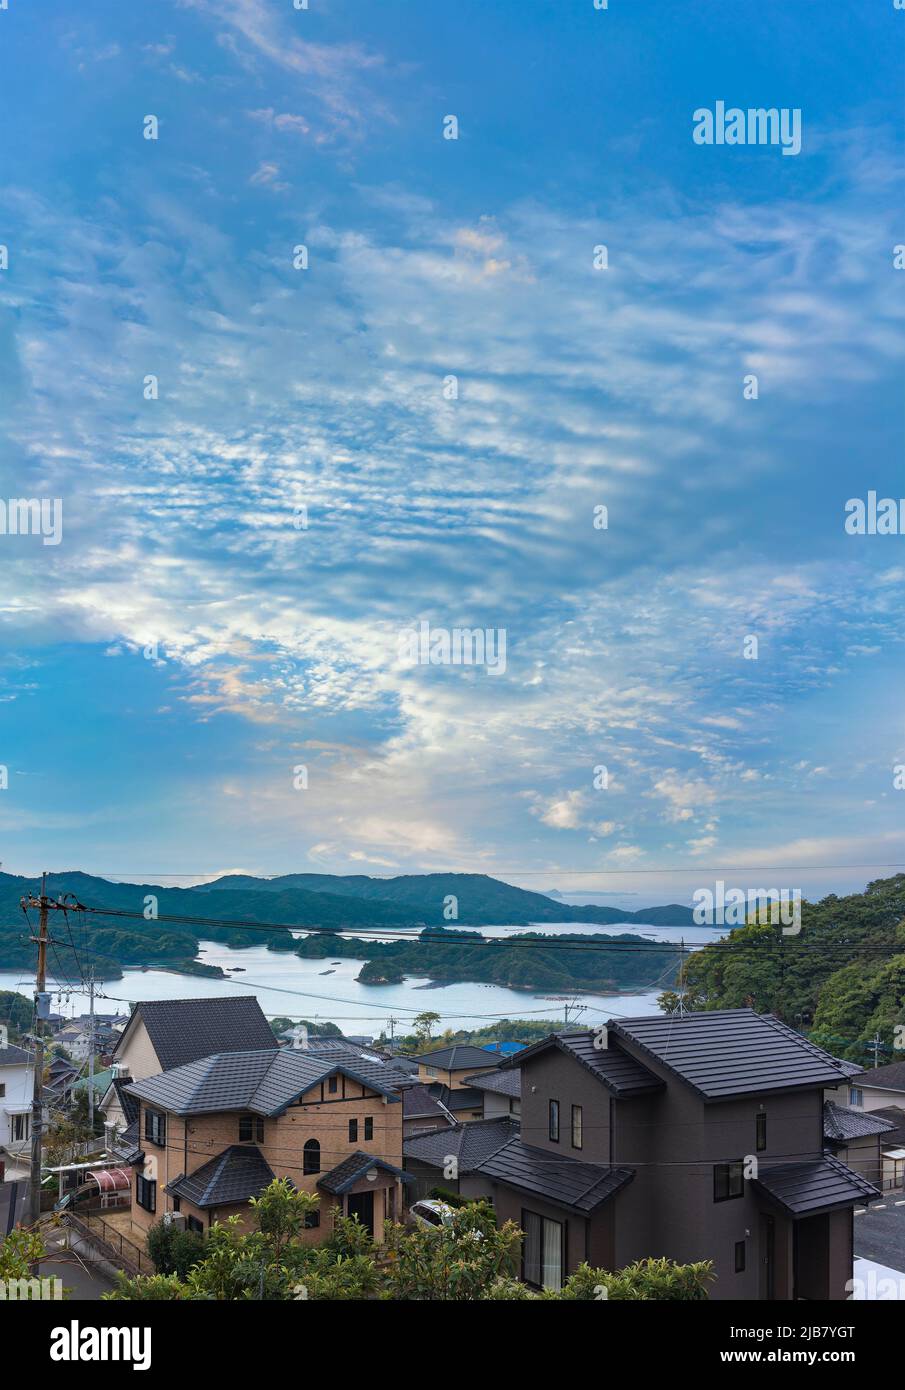 kyushu, giappone - dicembre 09 2021: Vista dall'alto di una zona residenziale che domina la splendida Kujūkushima marina con isole che si trovano al largo della S Foto Stock